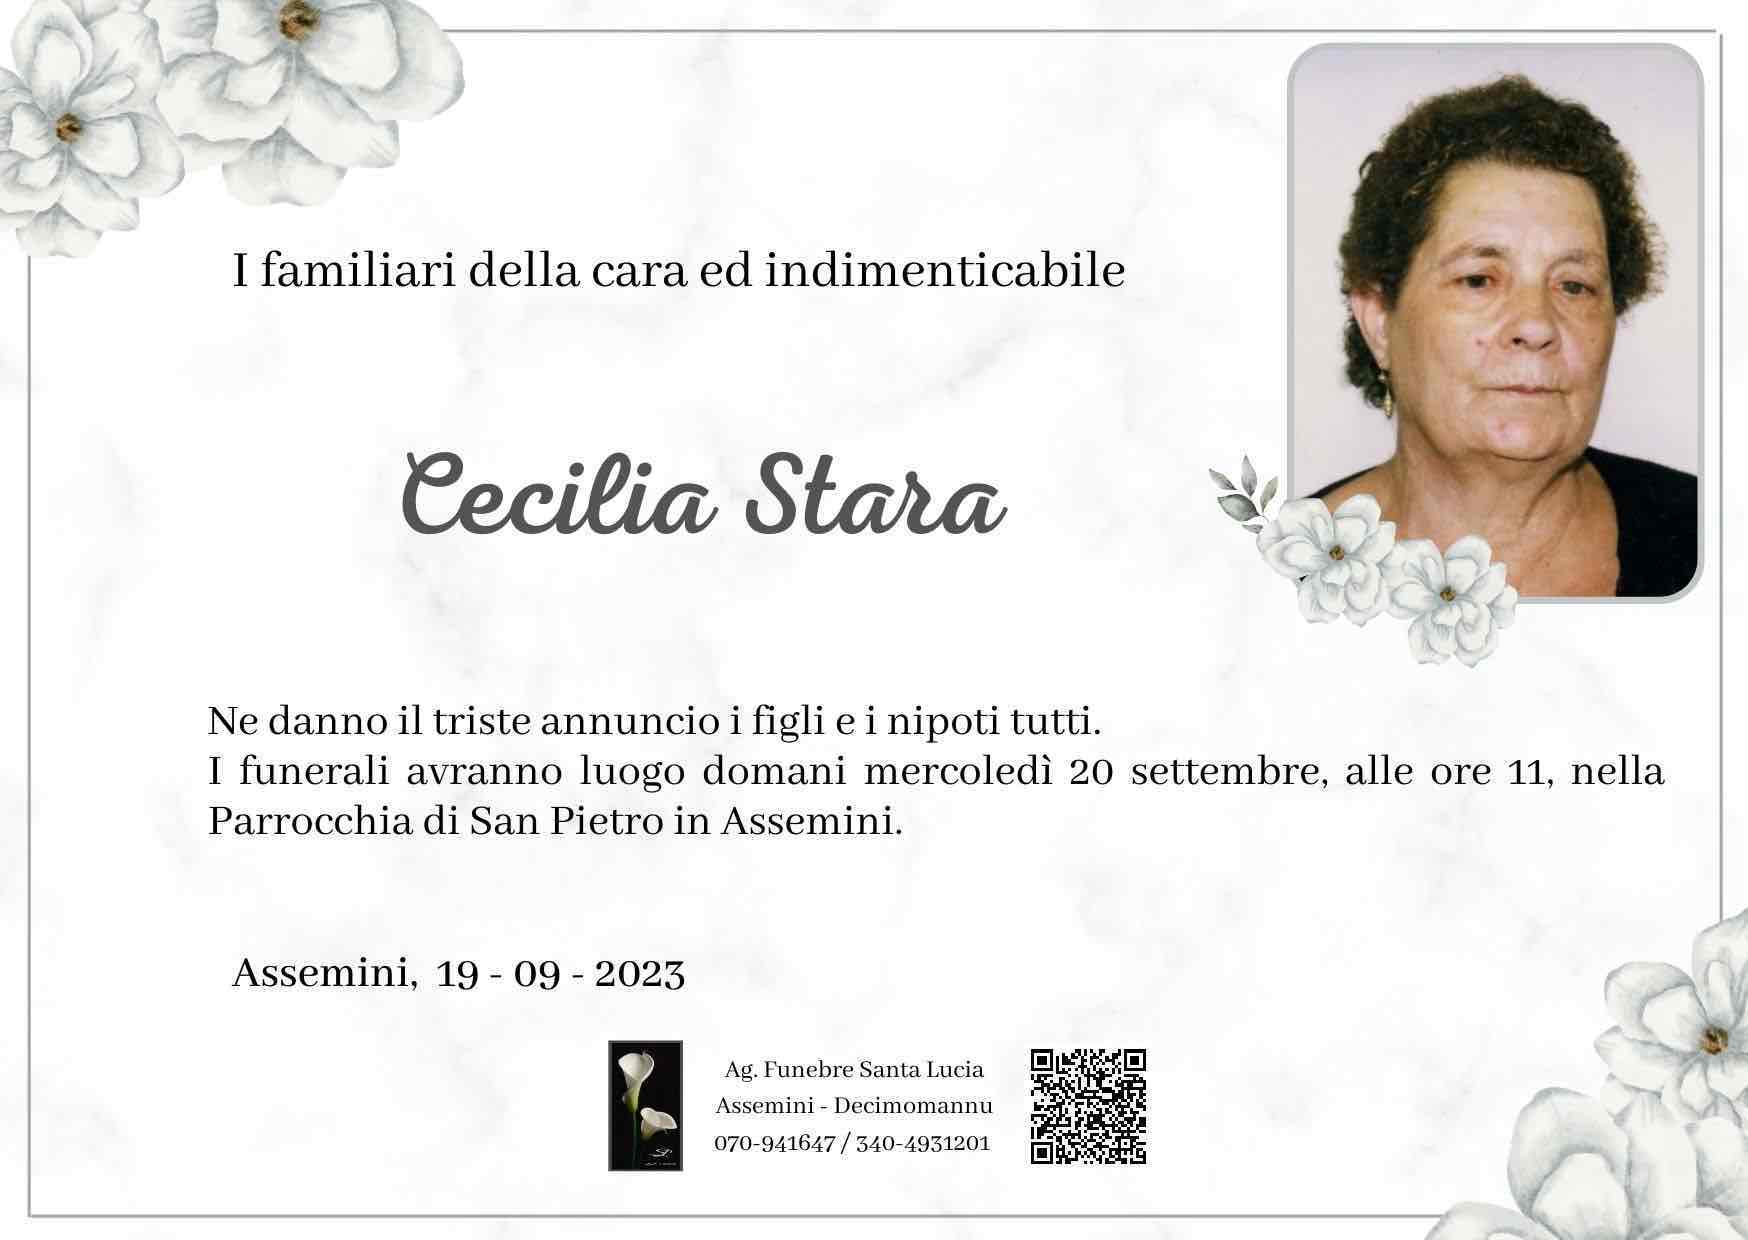 Cecilia Stara